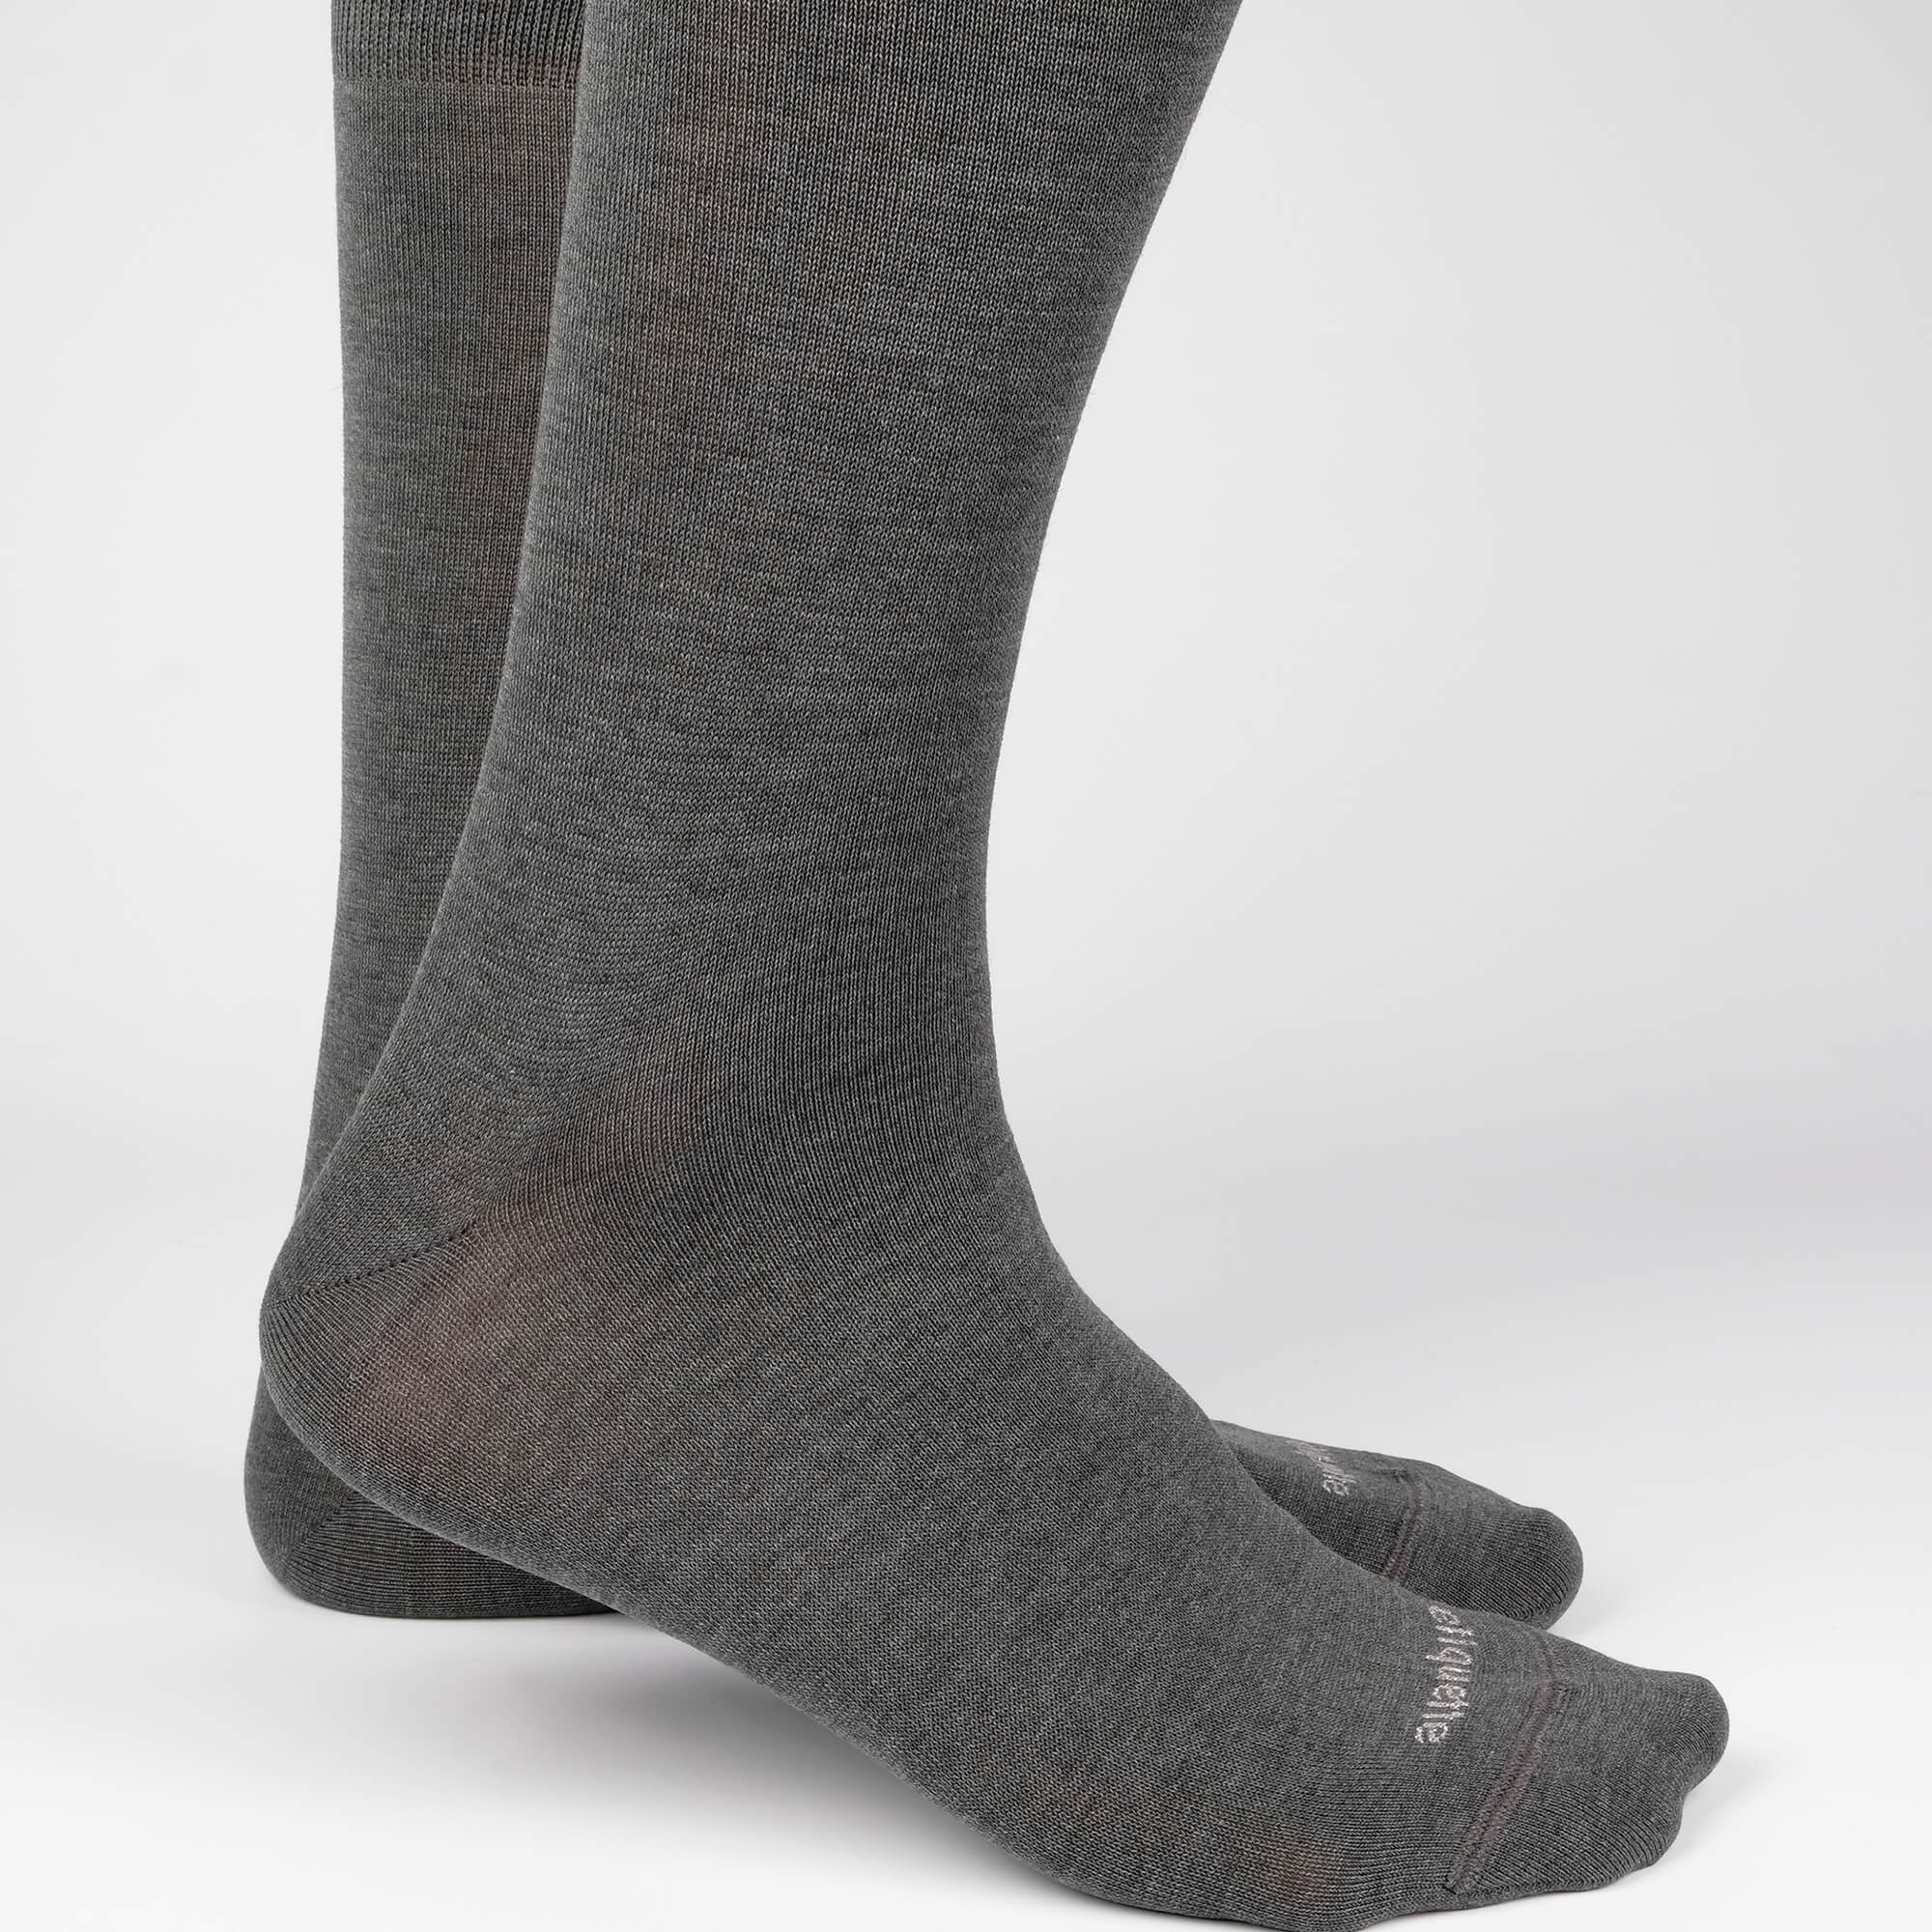 Mens Socks - Basic Luxuries Men's Socks - Dark Grey⎪Etiquette Clothiers